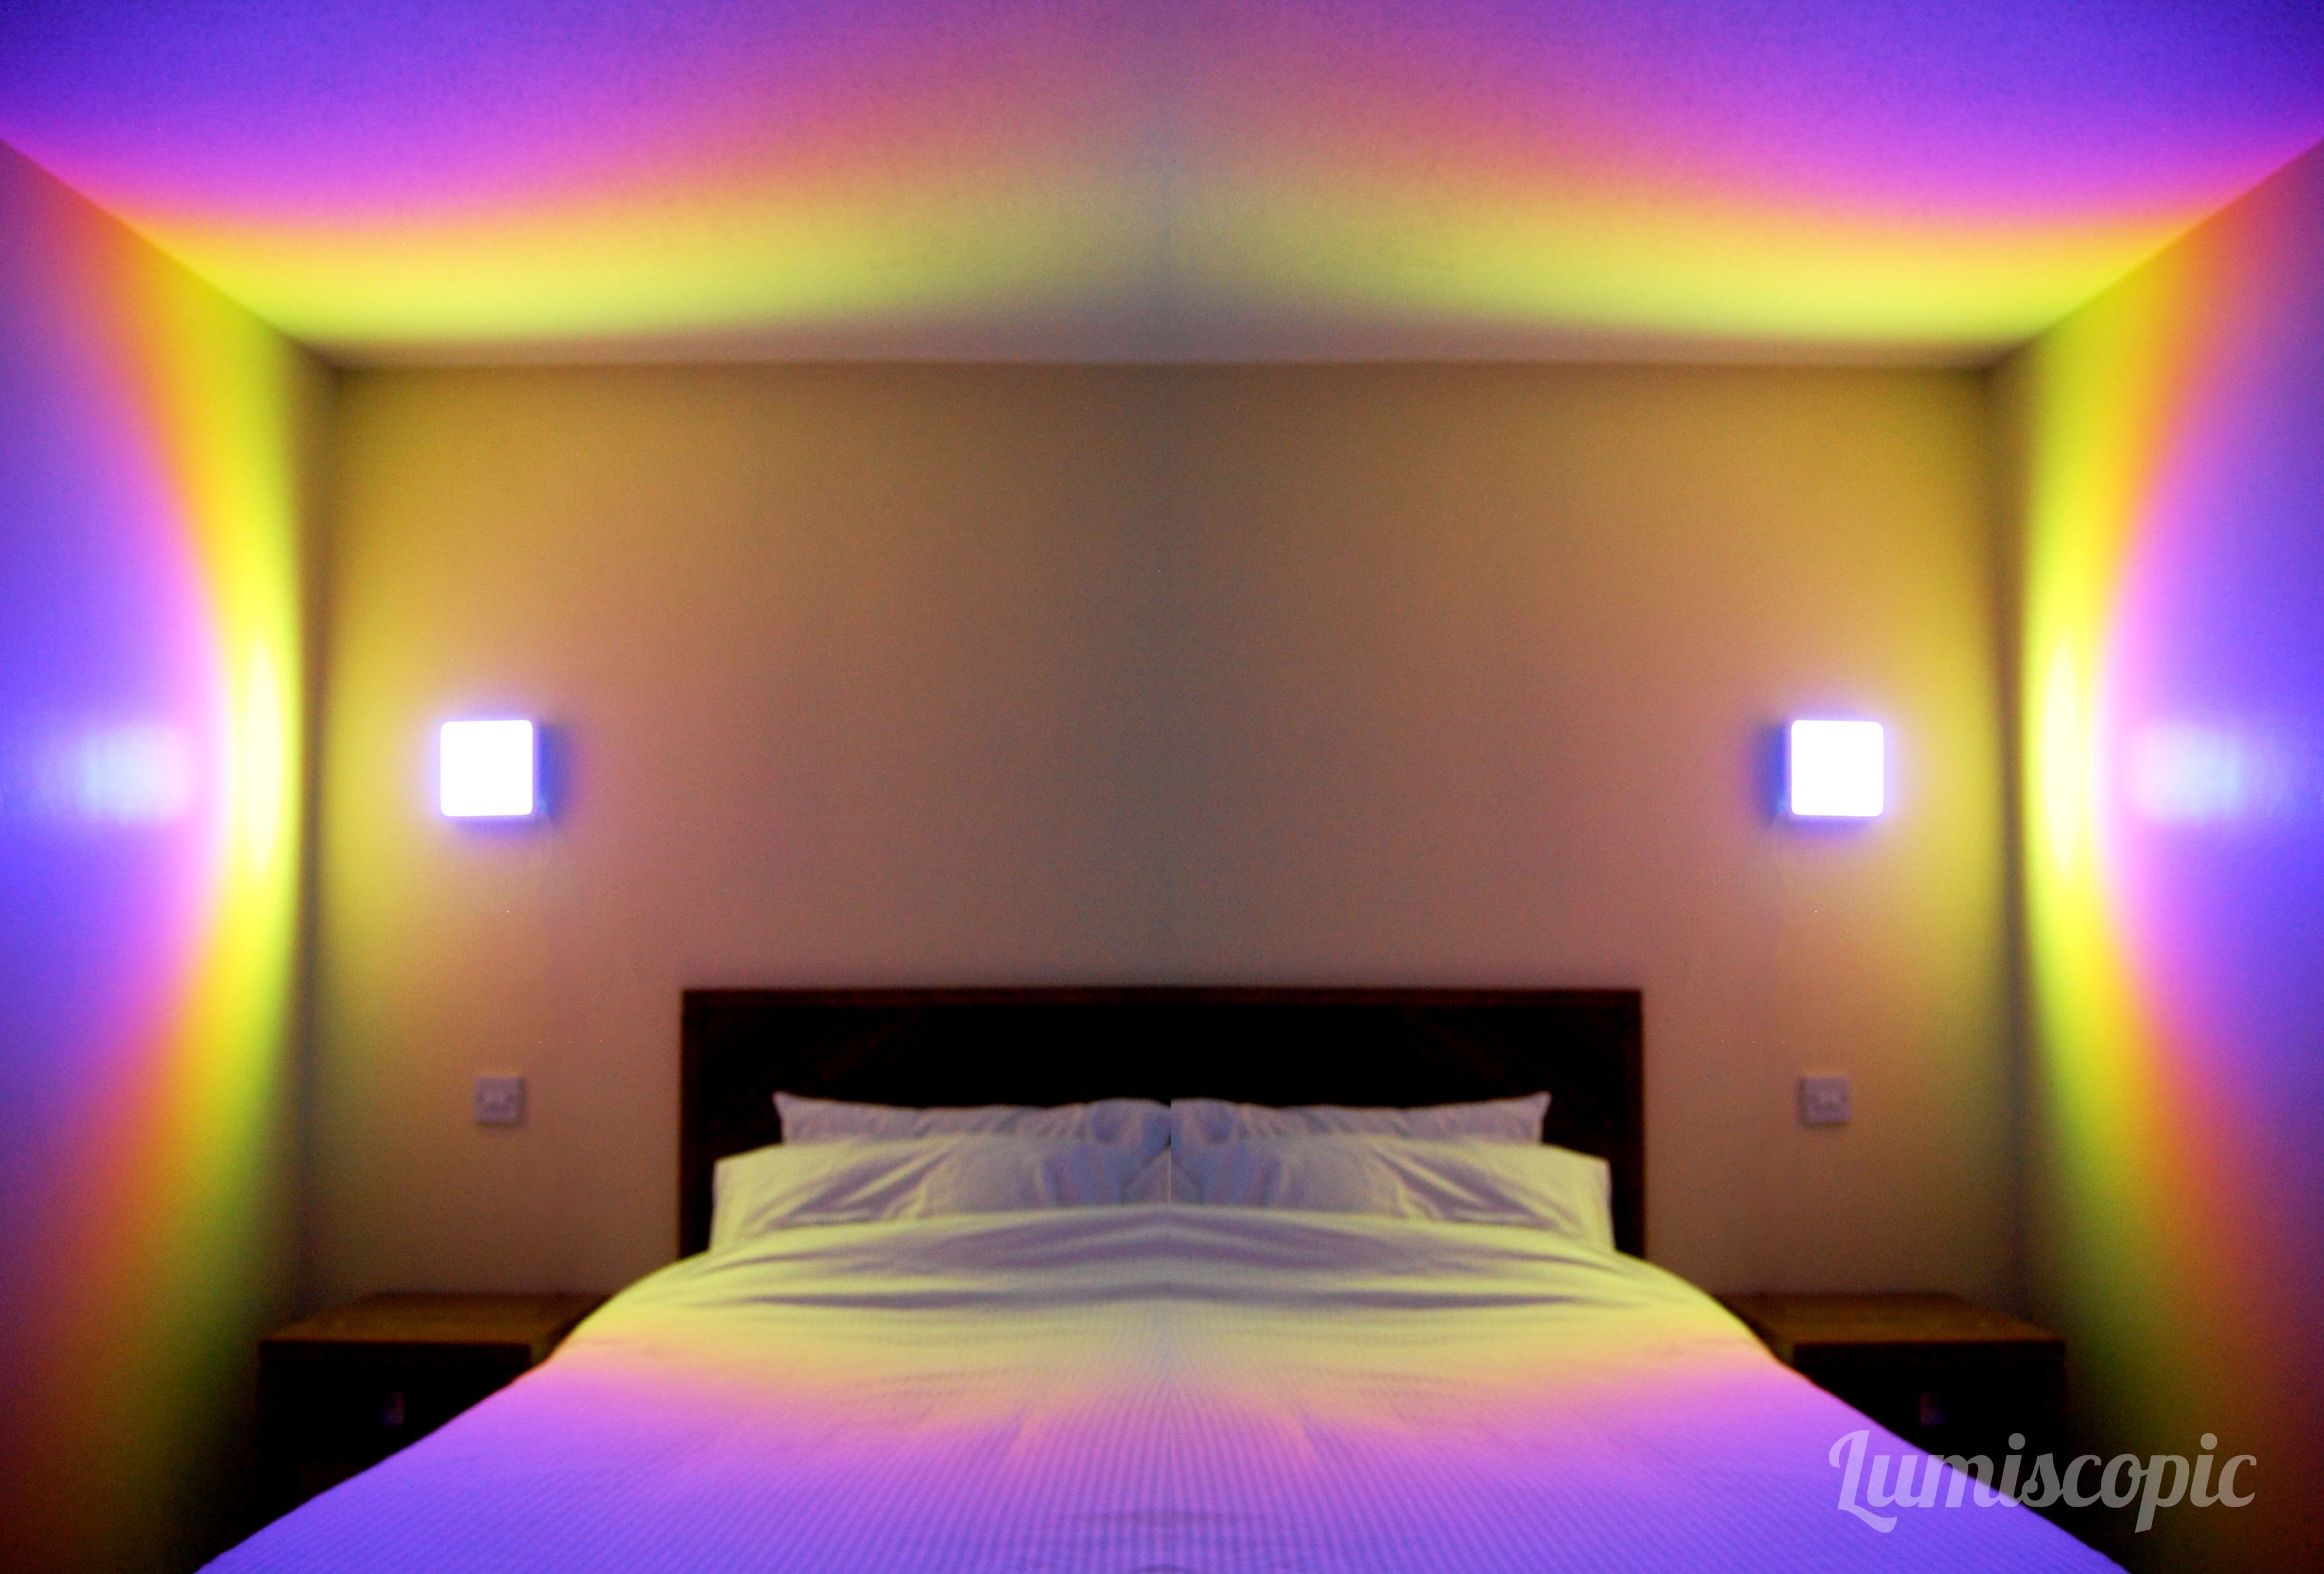 Светодиодная лампа в комнату. Подсветка РГБ лентой. Комната с подсветкой. Комната со светодиодами. Светодиодная подсветка в комнате.